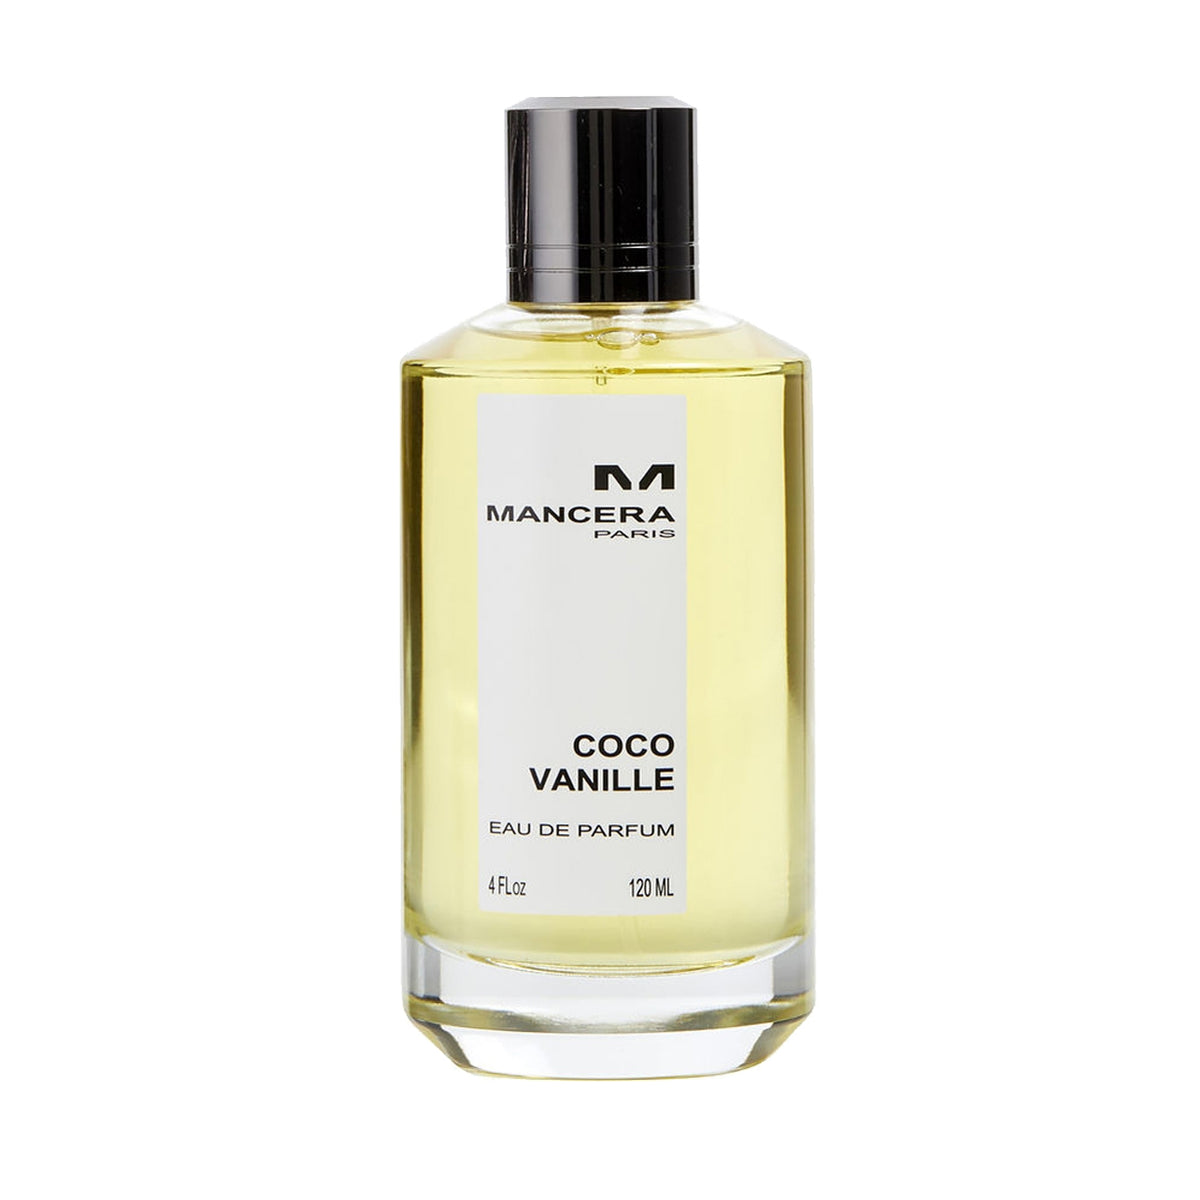 Mancera Coco Vanille Eau De Parfum on SALE